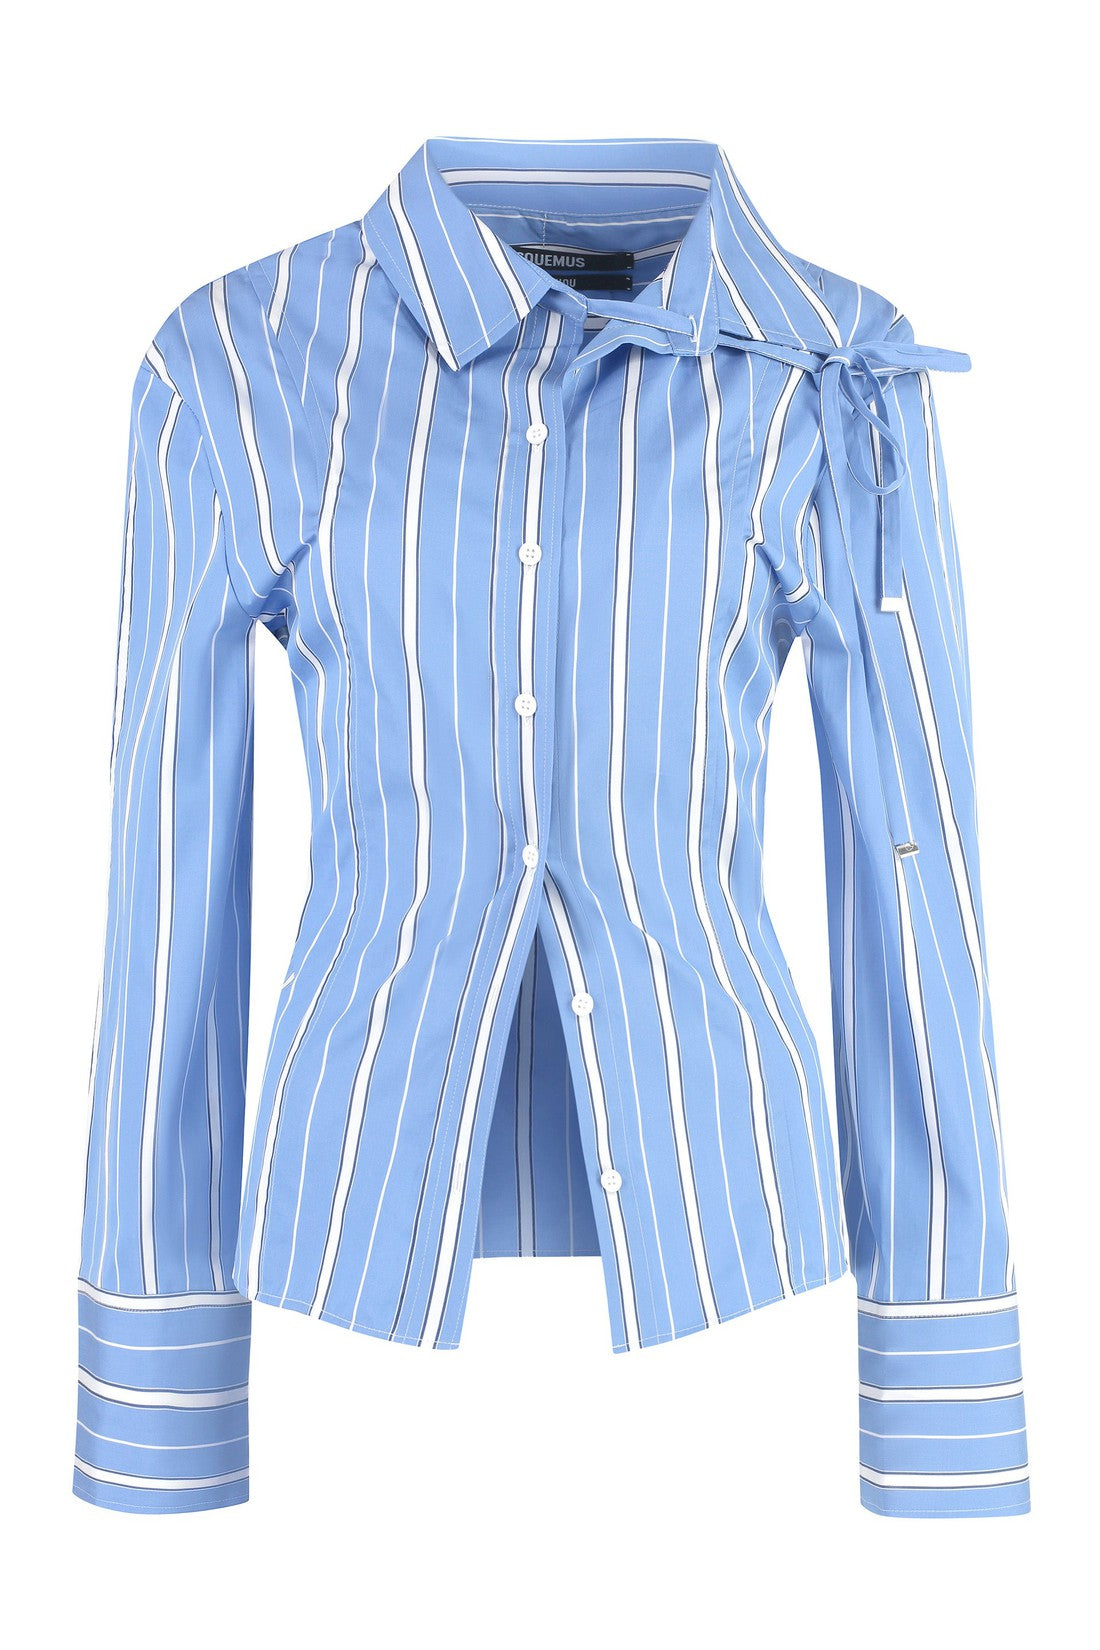 Jacquemus-OUTLET-SALE-Ruban striped shirt-ARCHIVIST